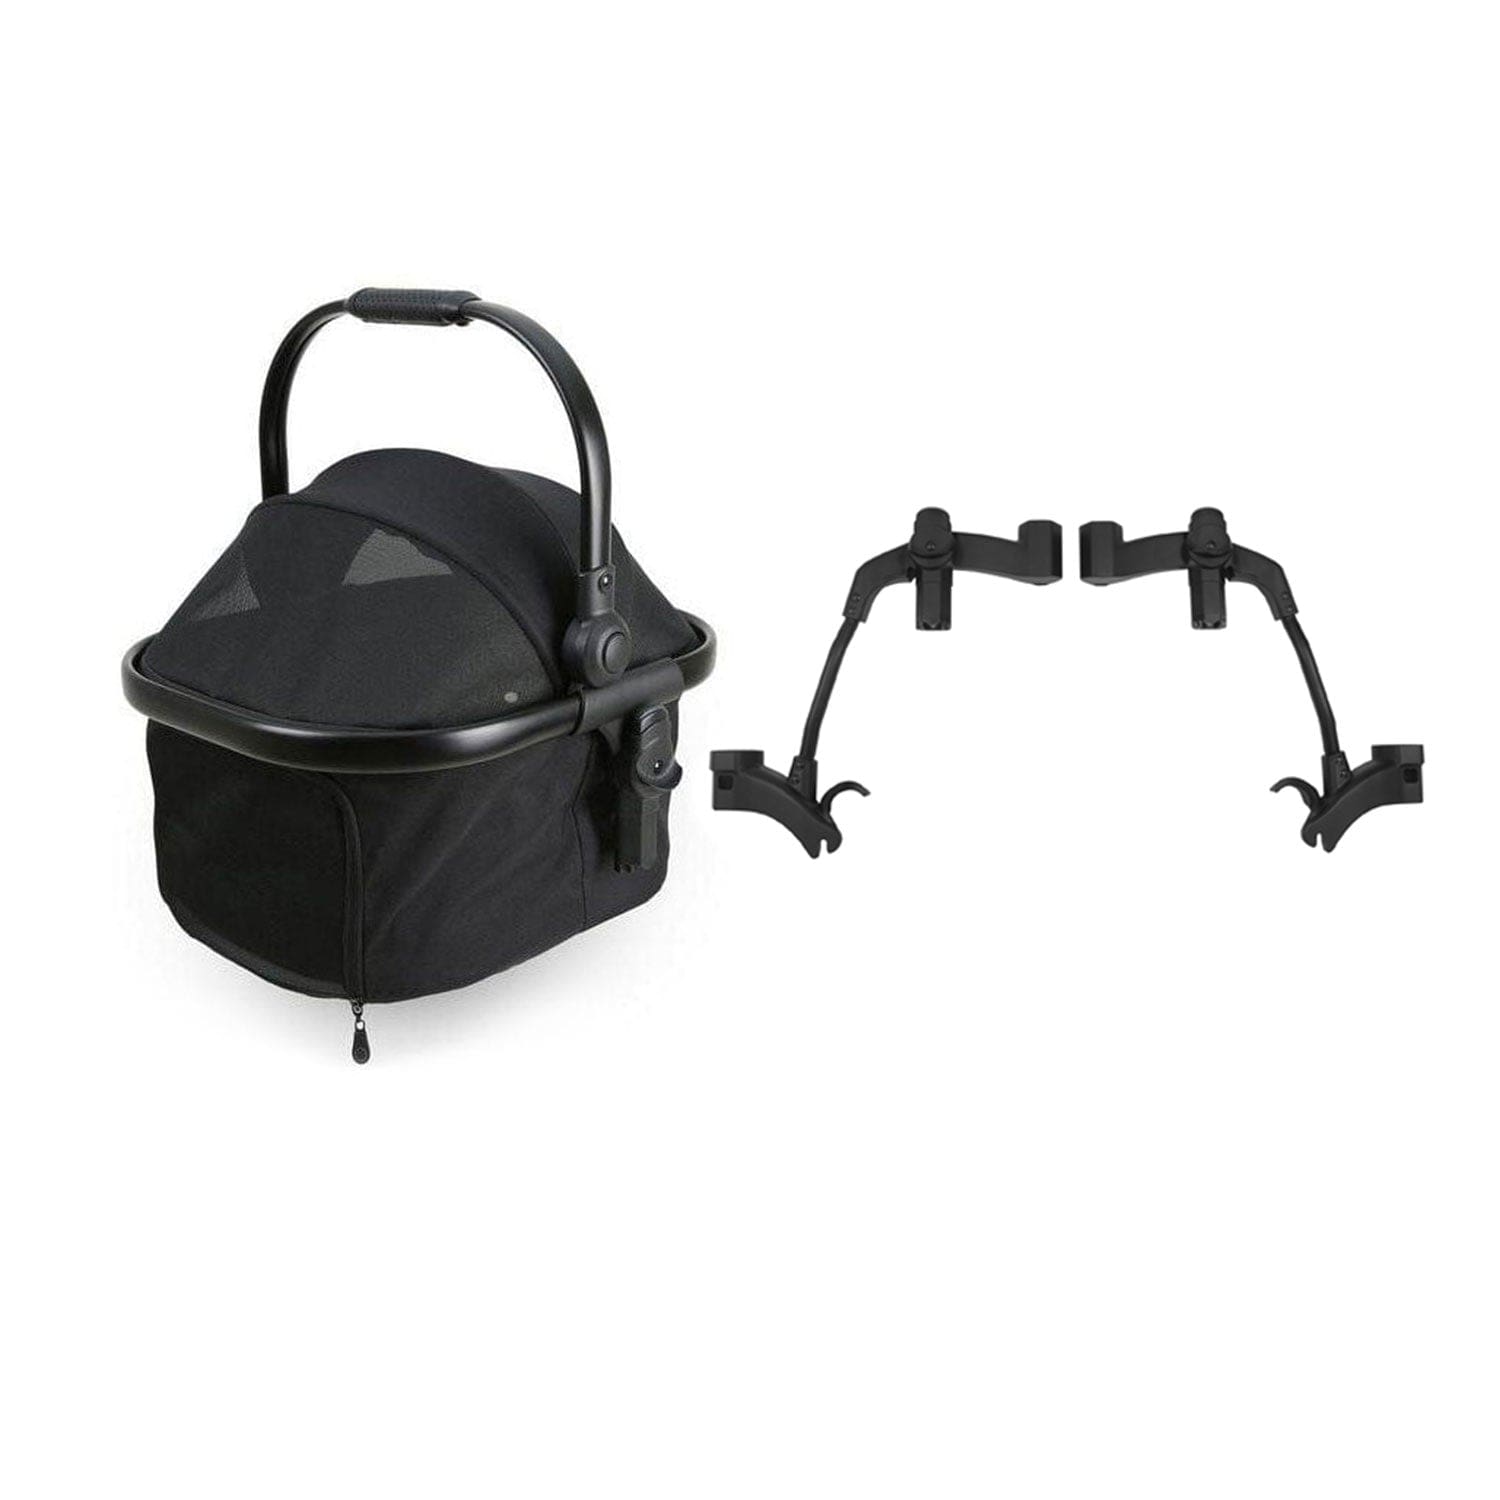 BabyStyle buggy accessories egg® Basket/Pet Basket & Tandem Adaptors Bundle 15499-DOG